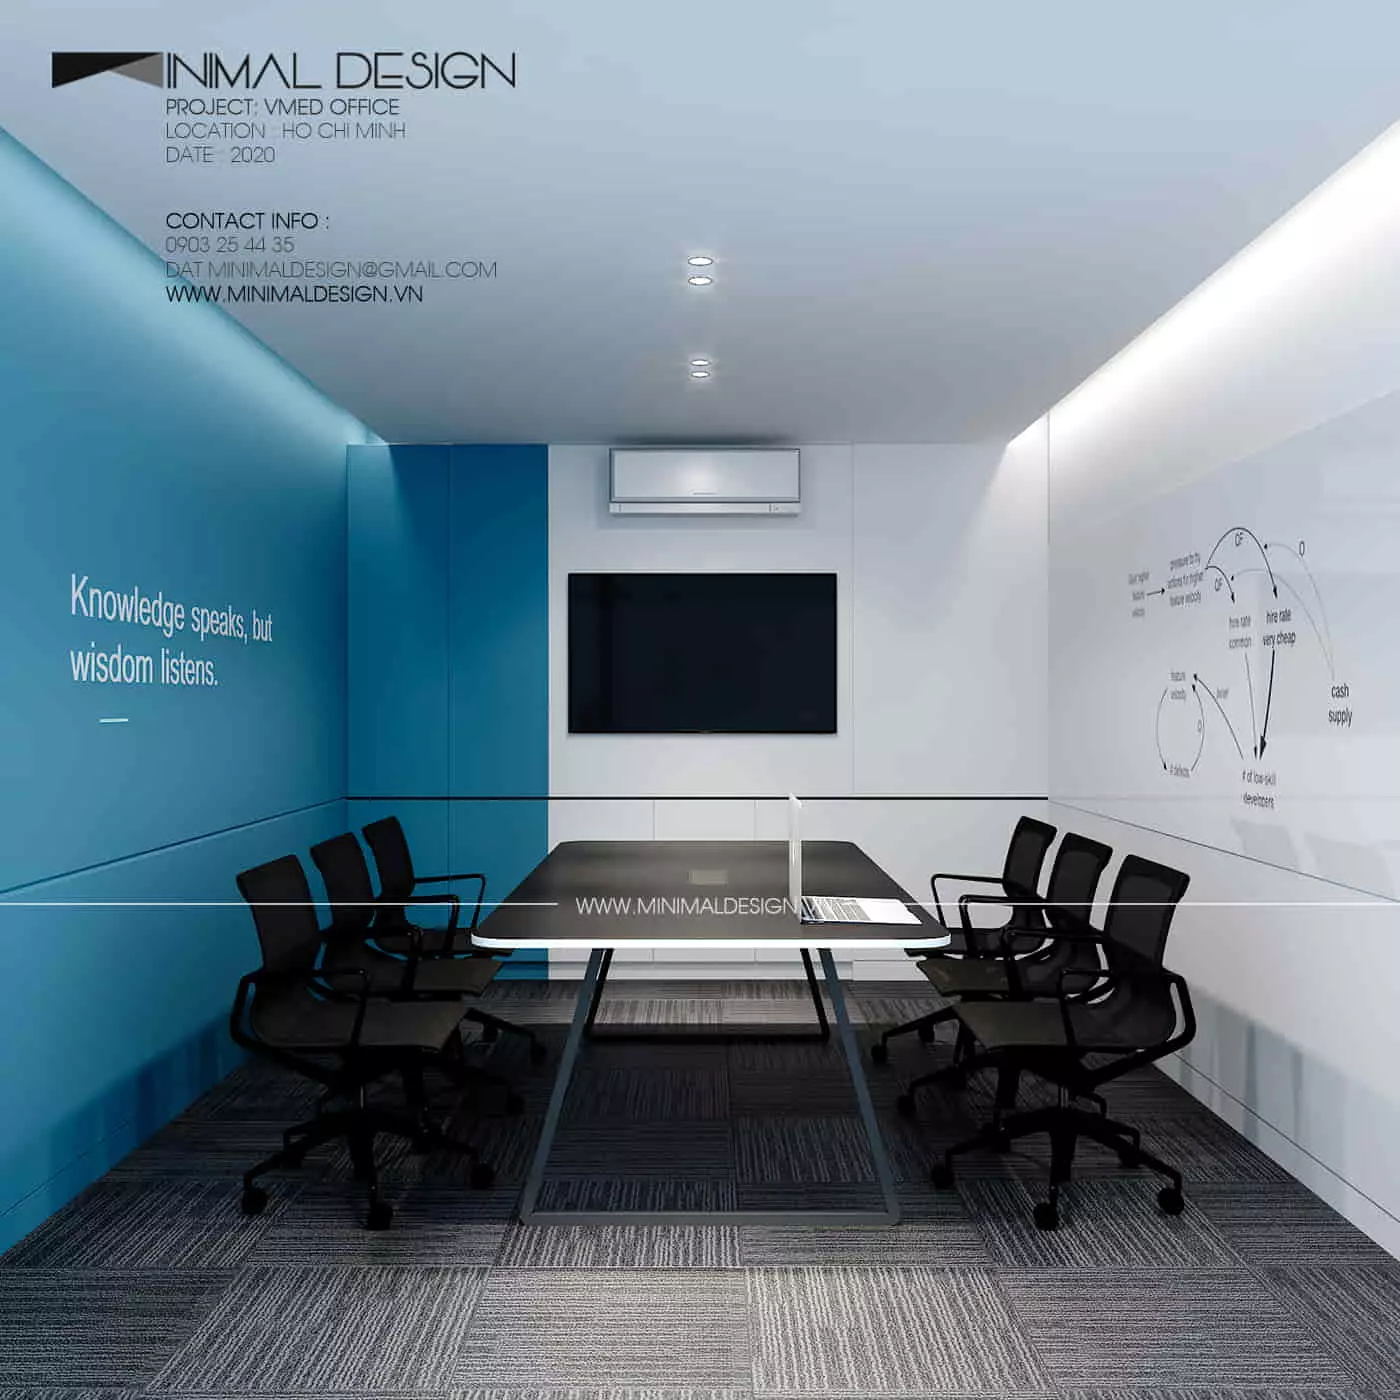 Công ty chuyên thiết kế thi công văn phòng Minimal Design với nhiều năm kinh nghiệm trong thiết kế nội thất văn phòng đã tạo ấn tượng với nhiều dự án thành công rực rỡ. Đưa phong cách tối giản vào trong không gian làm việc đã mang lại hiệu quả cao trong việc nâng cao tinh thần nhân viên